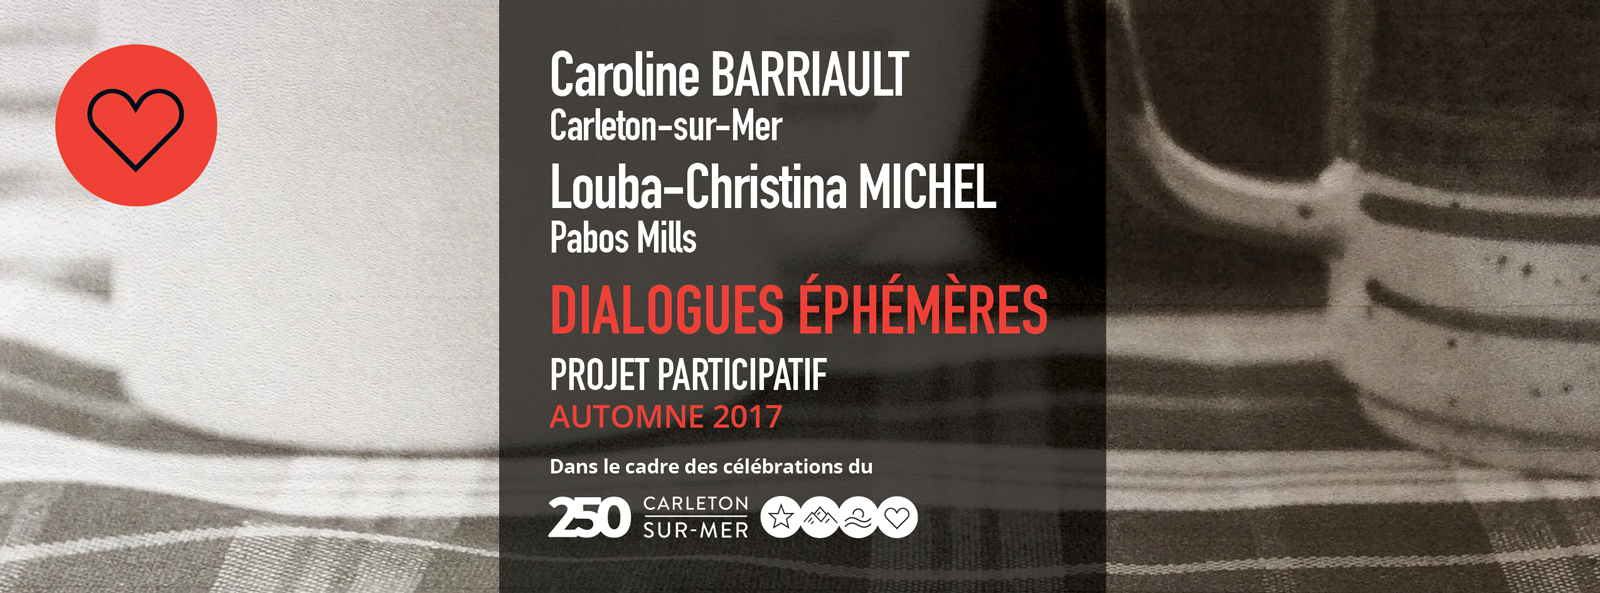 Caroline BARRIAULT, Carleton-sur-Mer Louba-Christina MICHEL, Pabos Mills DIALOGUES ÉPHÉMÈRES | Projet participatif